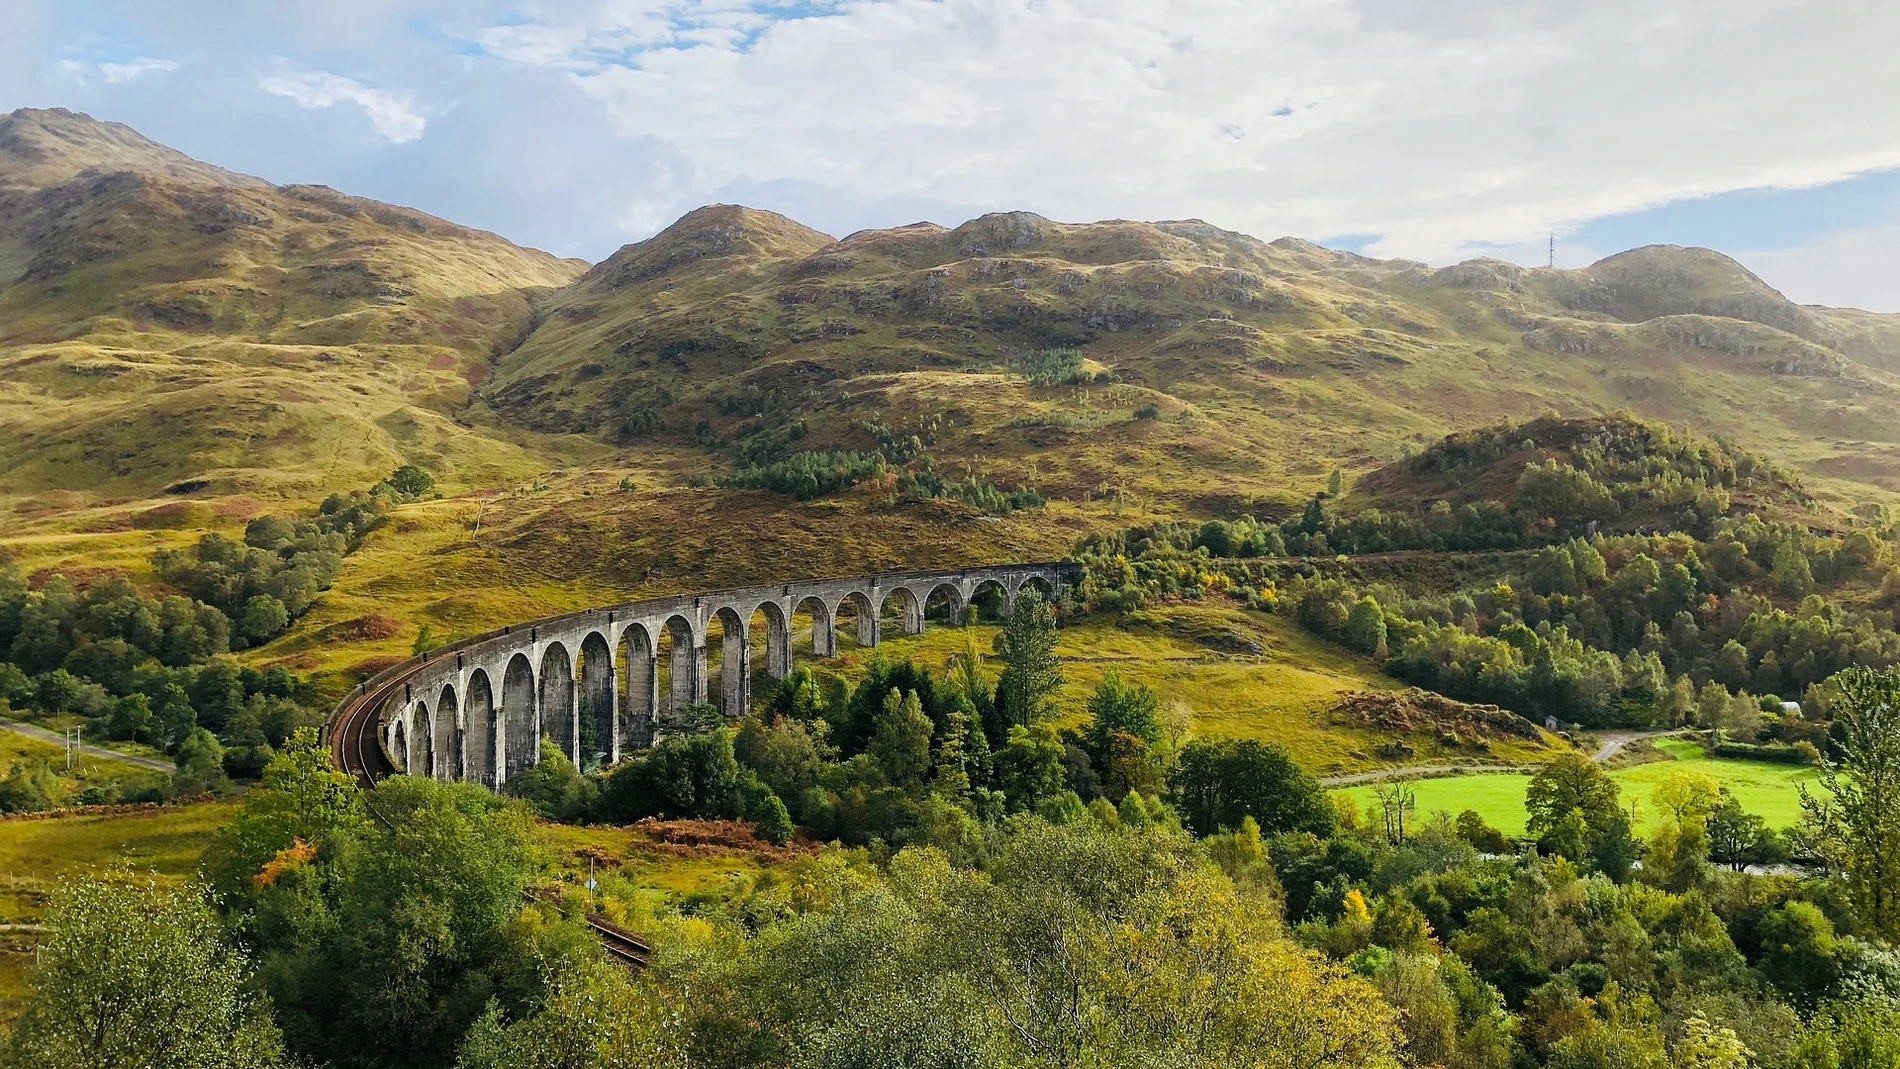 Puentes como este, conocido por haber servido de escenario durante la escena del coche volador de Harry Potter, son algunas de las bellezas disponibles en las tierras altas de Escocia.